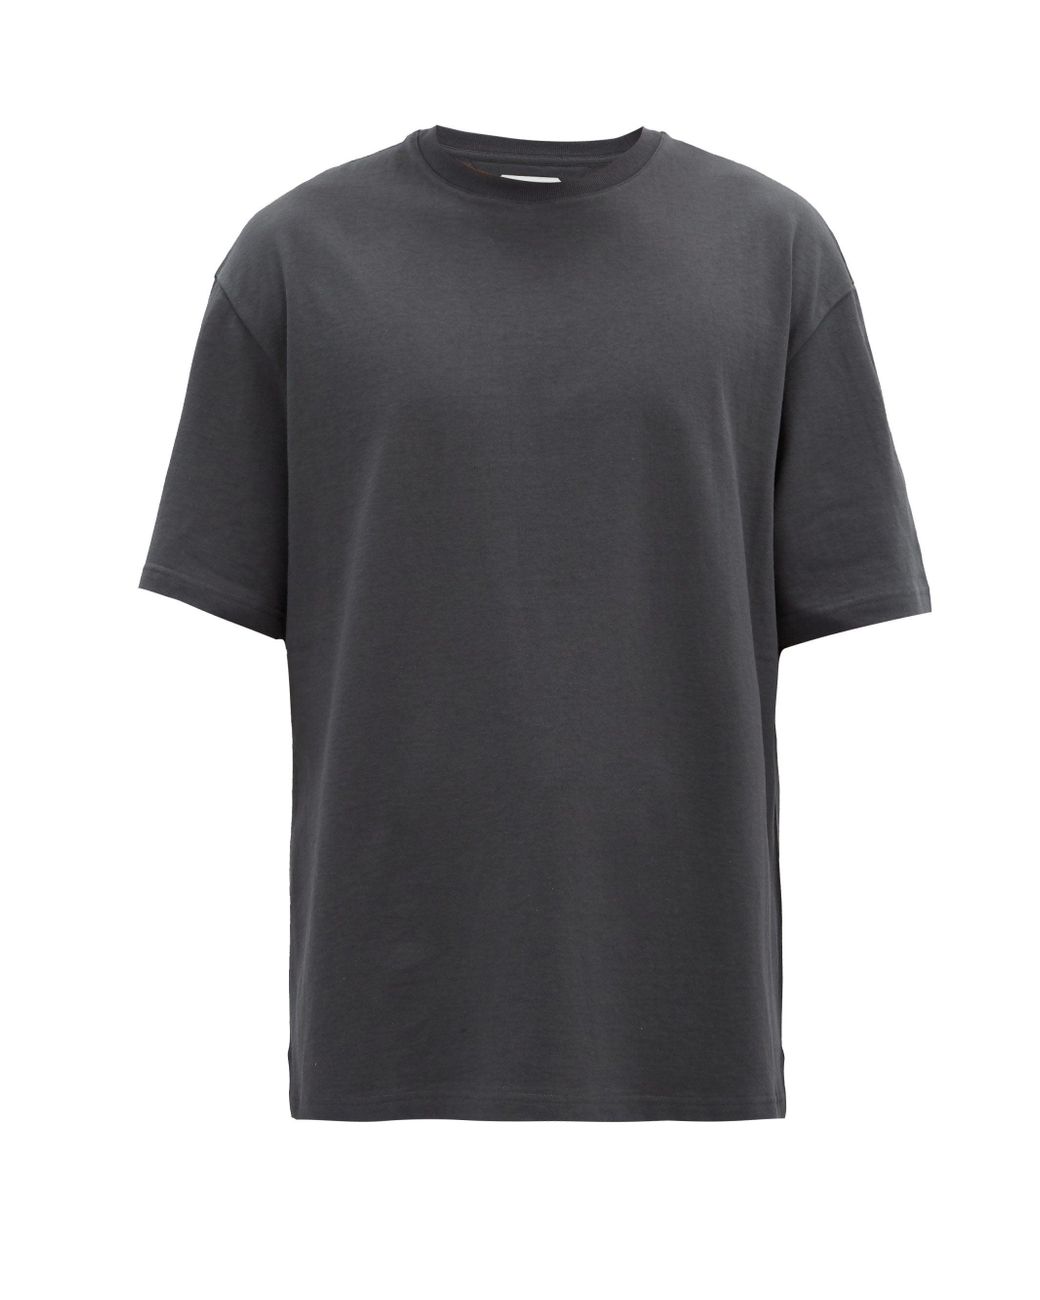 Bottega Veneta Sunrise Cotton T-shirt in Grey (Gray) for Men - Lyst